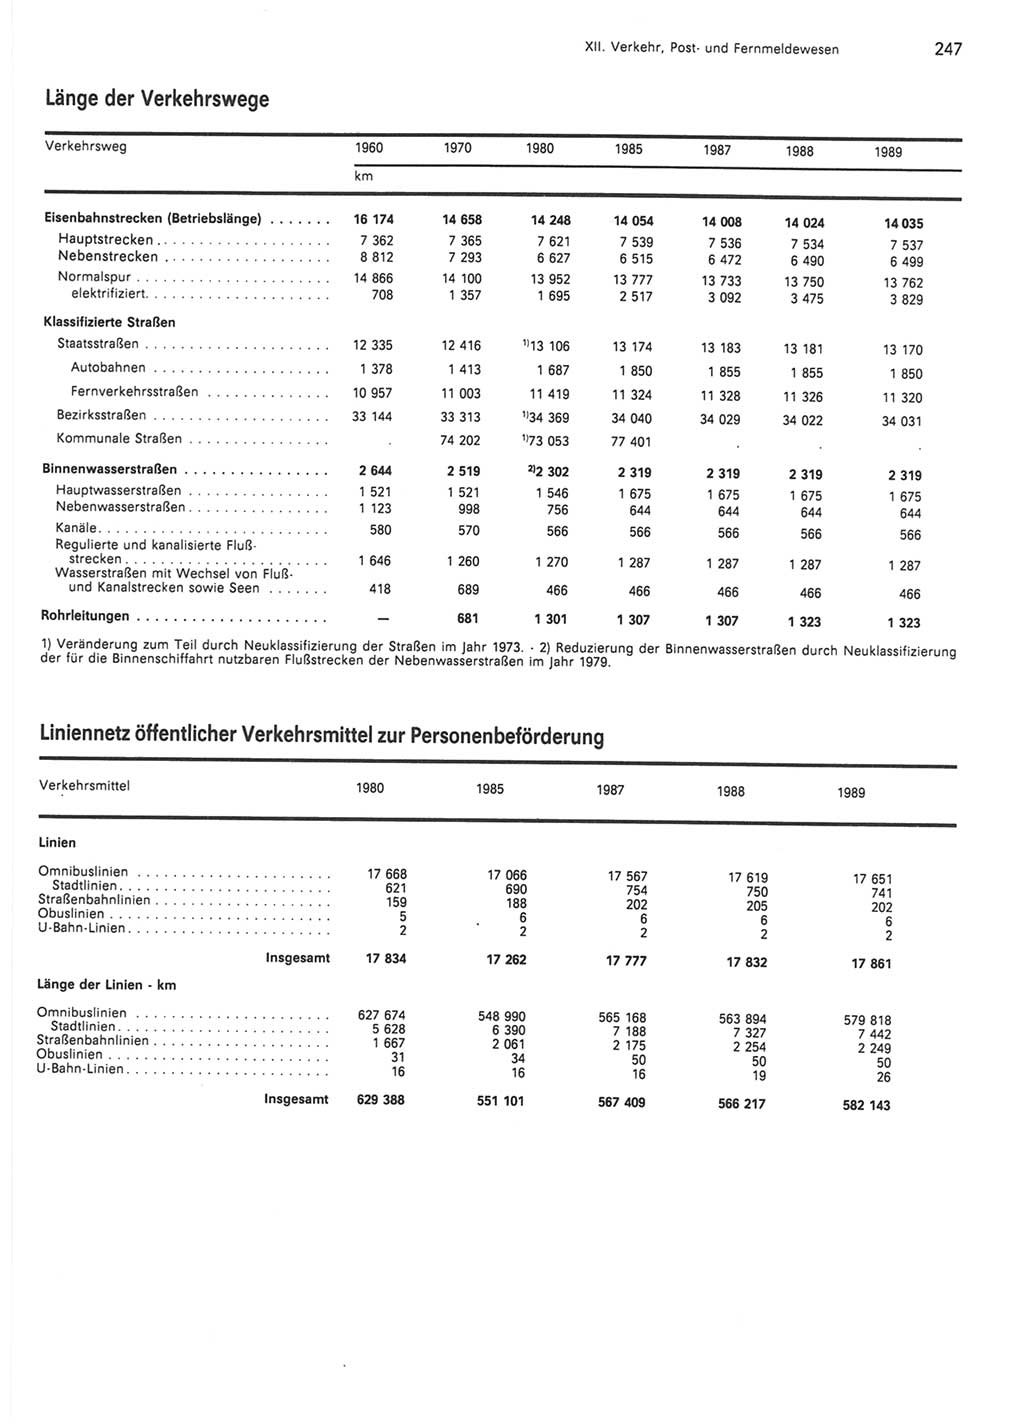 Statistisches Jahrbuch der Deutschen Demokratischen Republik (DDR) 1990, Seite 247 (Stat. Jb. DDR 1990, S. 247)